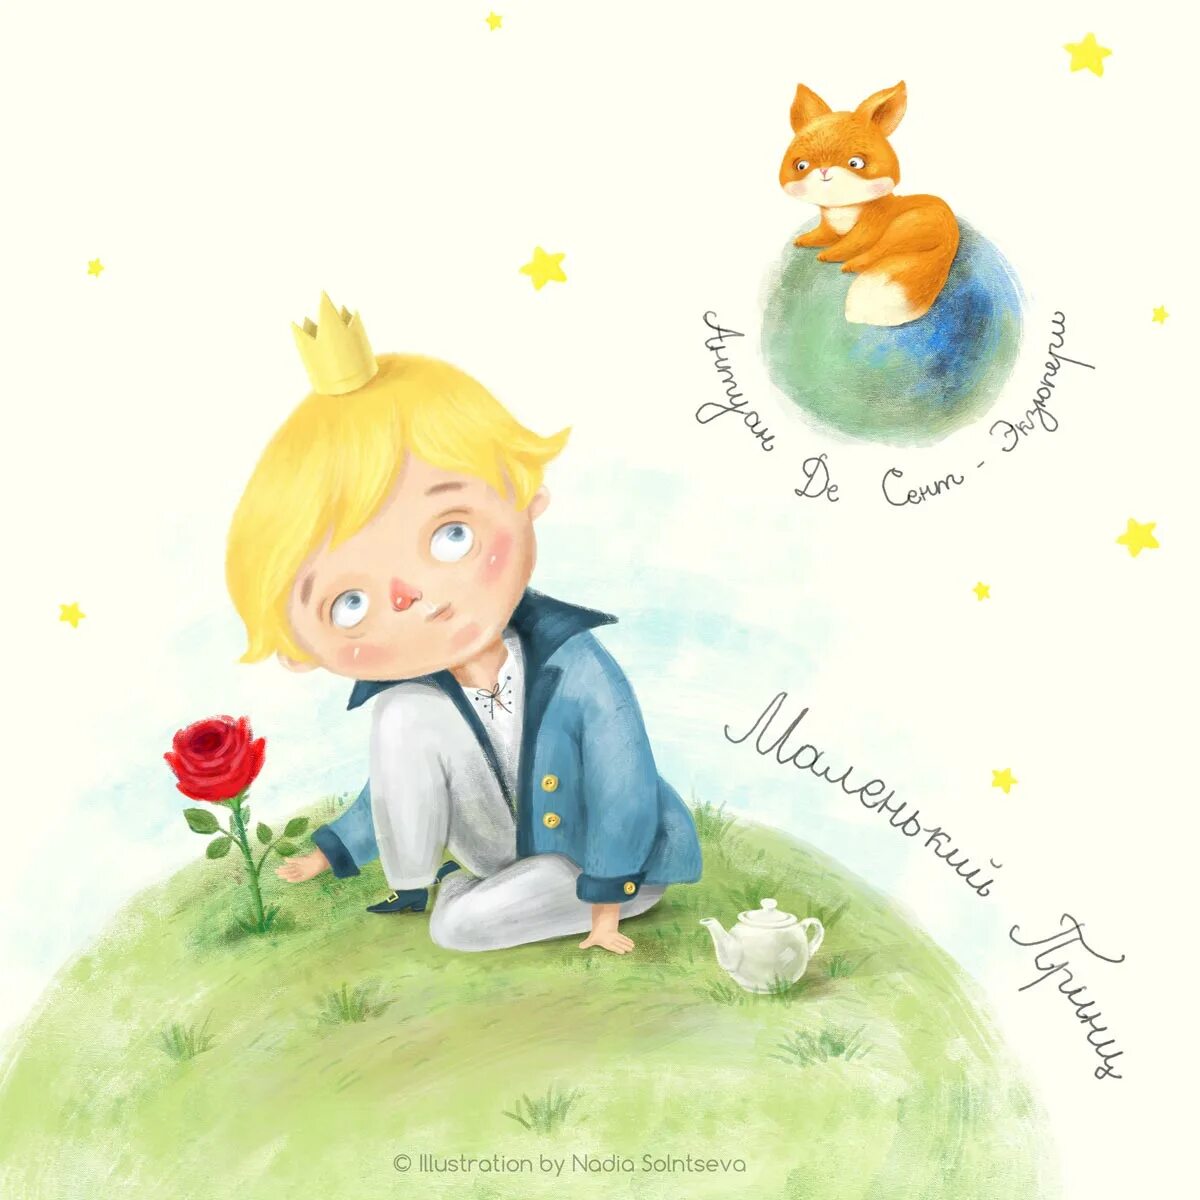 Маленький принц какой год. Маленький принц иллюстрации из книги. Маленький принц иллюстрации автора. Книга маленький принц иллюстрации Лис. Иллюстрации маленький принц оригинальные из книги.